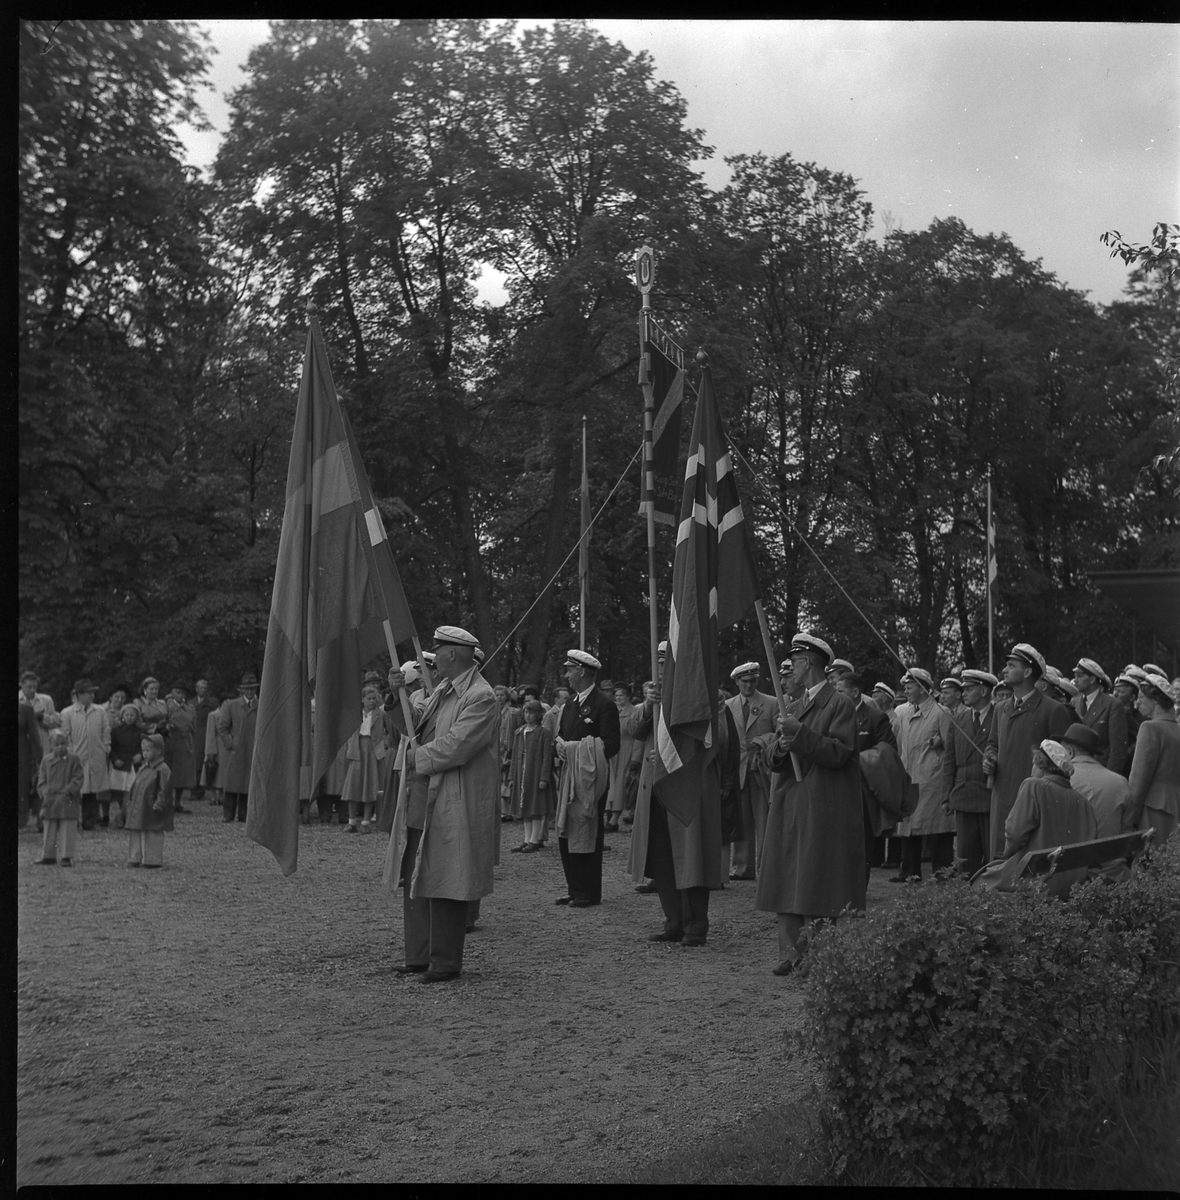 Samling i Plantaget, maj 1950. En kör från Norge är på besök.